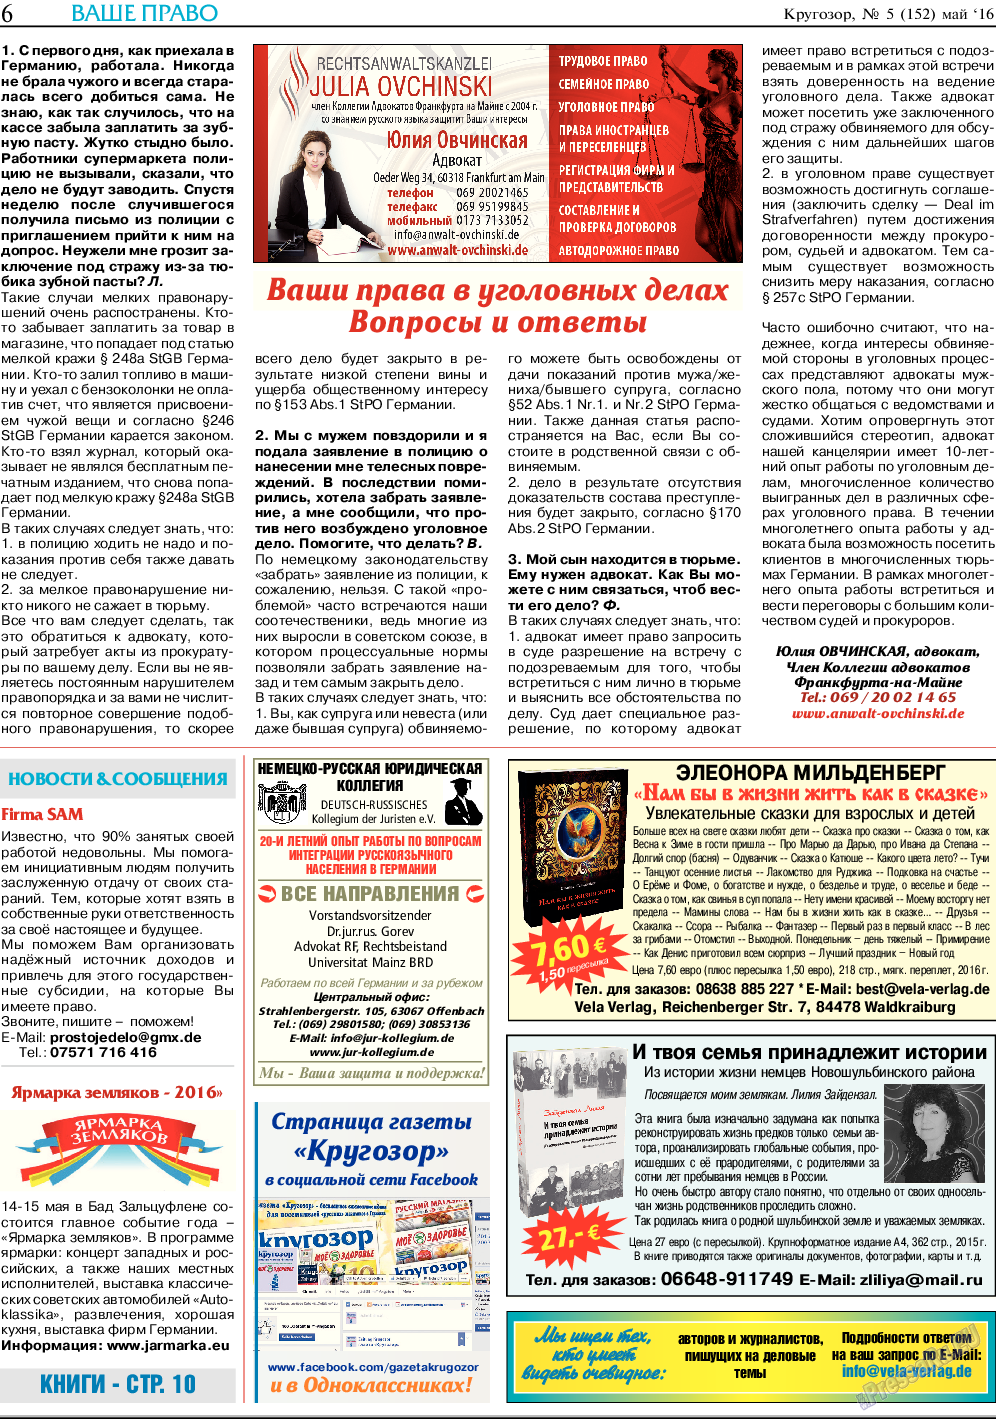 Кругозор, газета. 2016 №5 стр.6